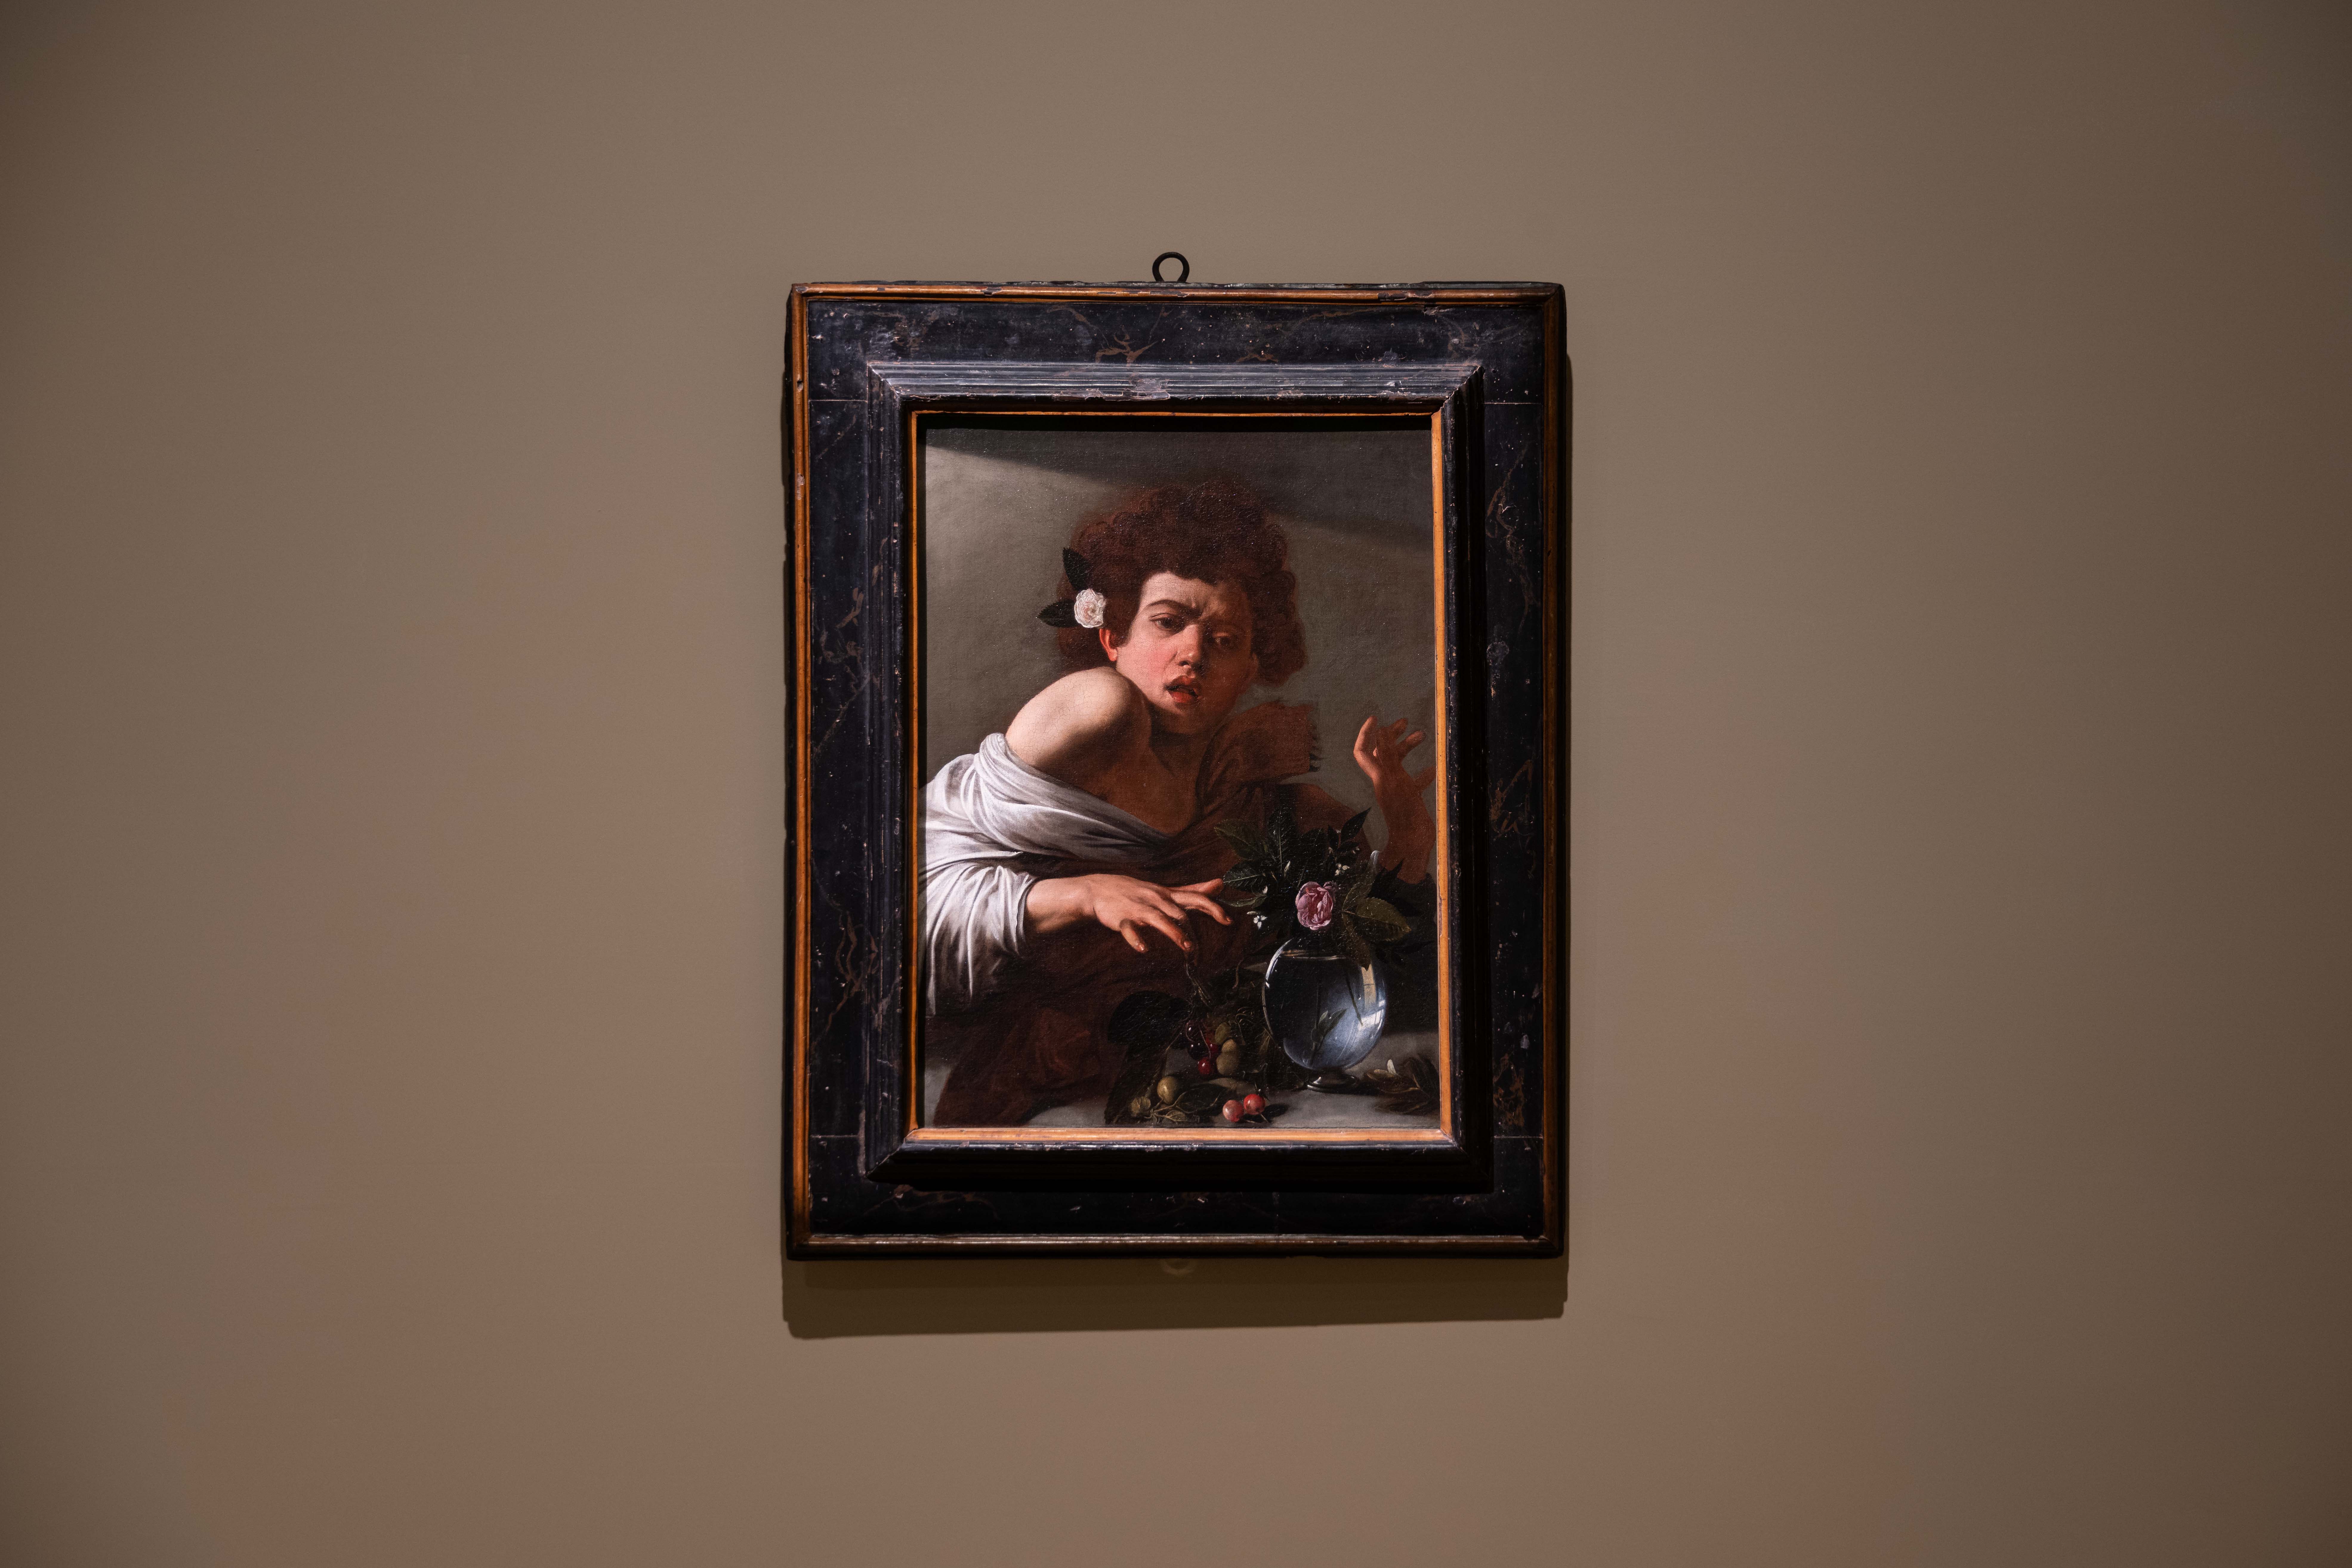 奇 美 博 物 館 《 英 國 國 家 藝 廊 珍 藏 展 》 第 二 單 元 「 從 王 室 到 平 民 ： 巴 洛 克 繪 畫 」 _ 米 開 朗 基 羅 ． 梅 里 西 ． 達 ． 卡 拉 瓦 喬 （ 1 5 7 1 - 1 6 1 0 ） 作 品 〈 被 蜥 蜴 咬 傷 的 男 孩 〉 ， 約 1 5 9 4 - 1 5 9 5 年 創 作 。 圖 / 奇 美 博 物 館 提 供 